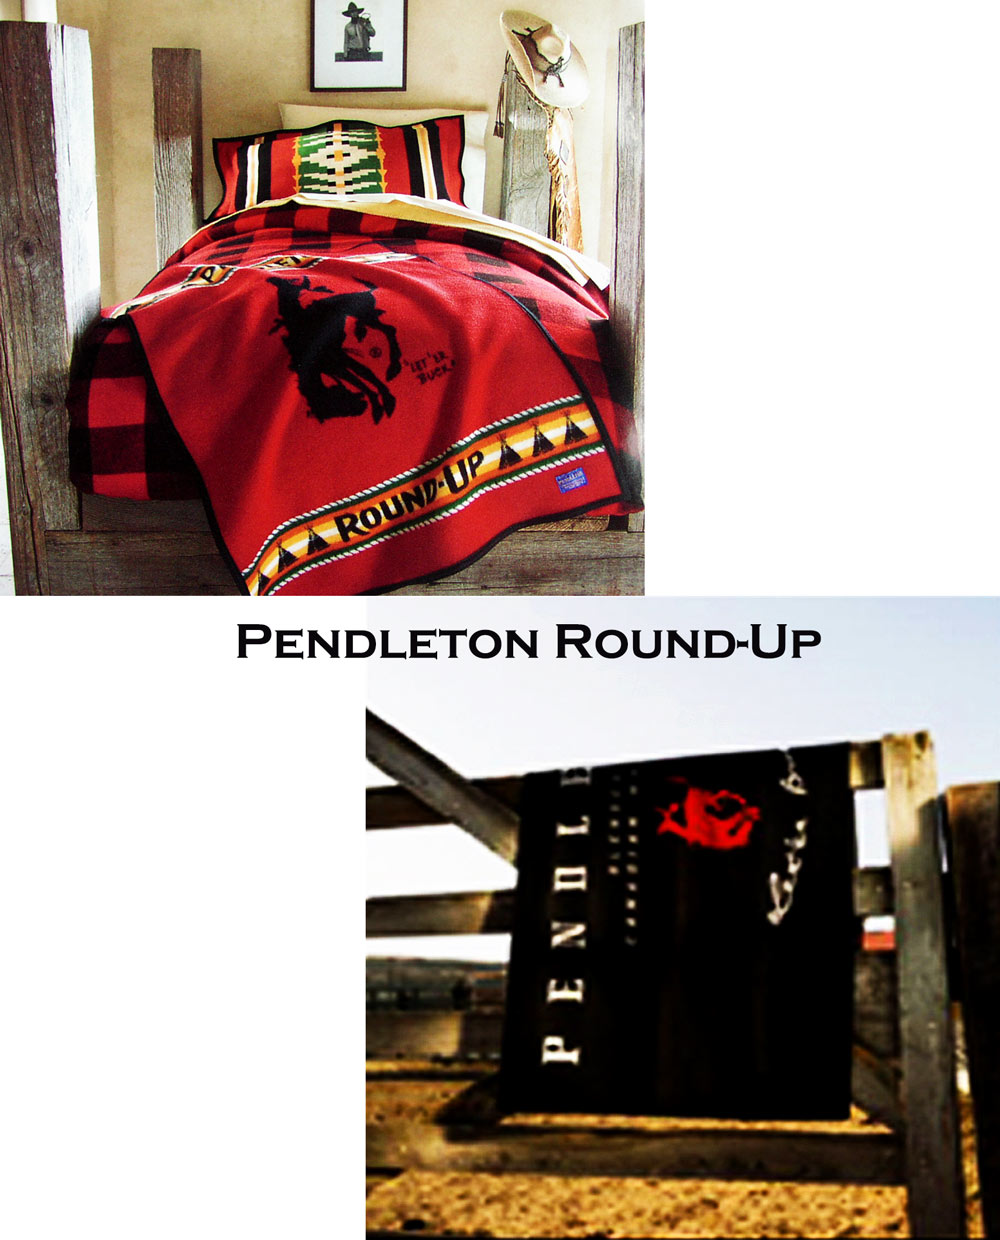 ペンドルトン ウイスキー サドルブランケット/Pendleton Whisky Saddle Blanket